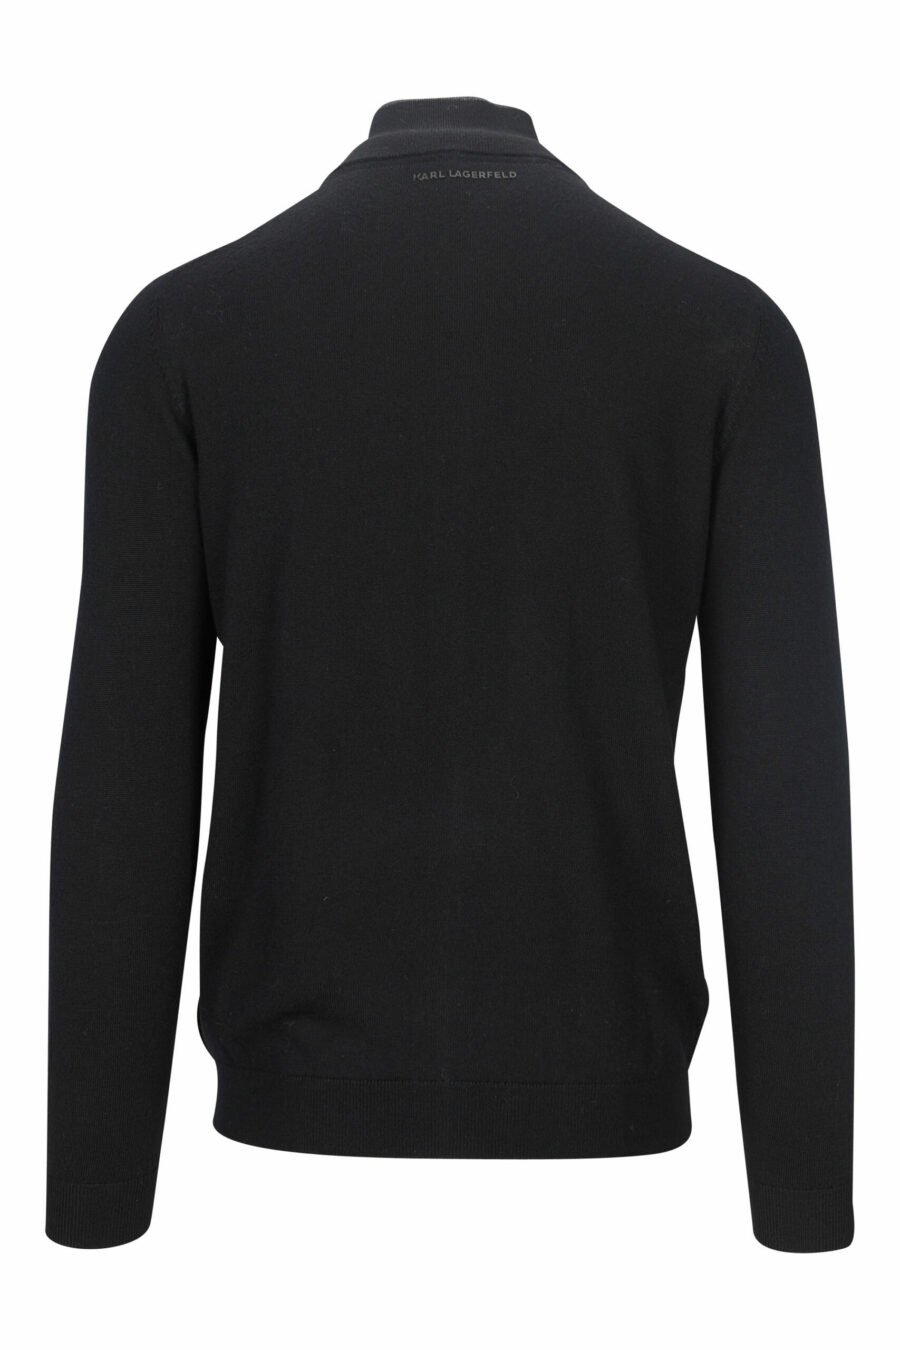 Schwarzes Sweatshirt mit Reißverschluss und monochromem Minilogo - 4062226635752 1 skaliert